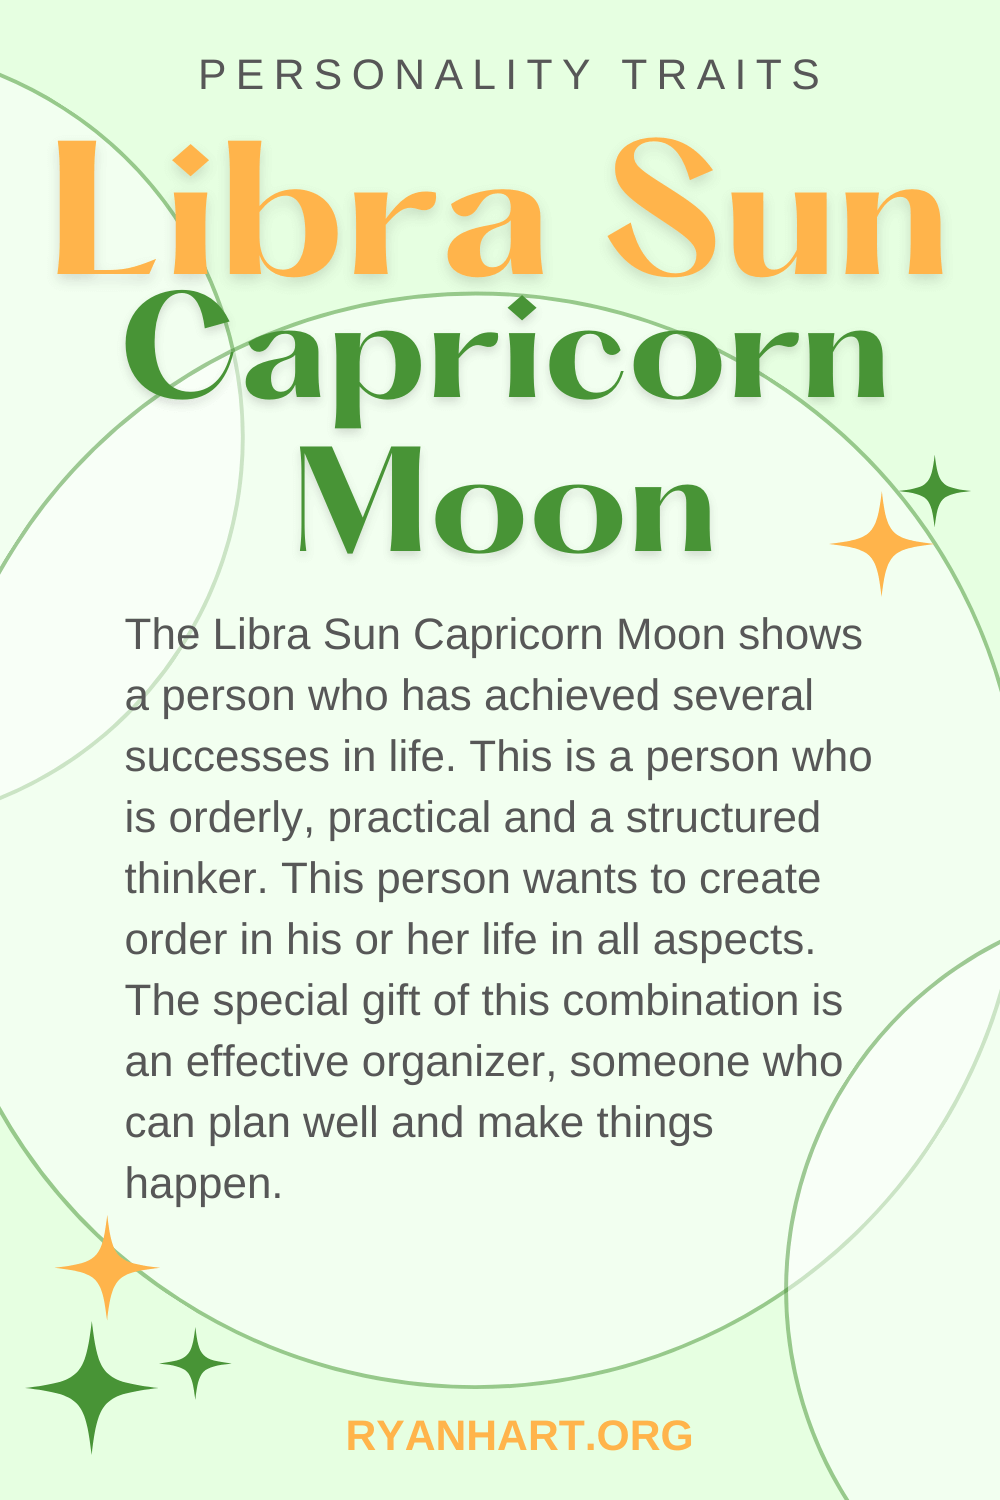  Libra Sun Capricorn Moon លក្ខណៈបុគ្គលិកលក្ខណៈ